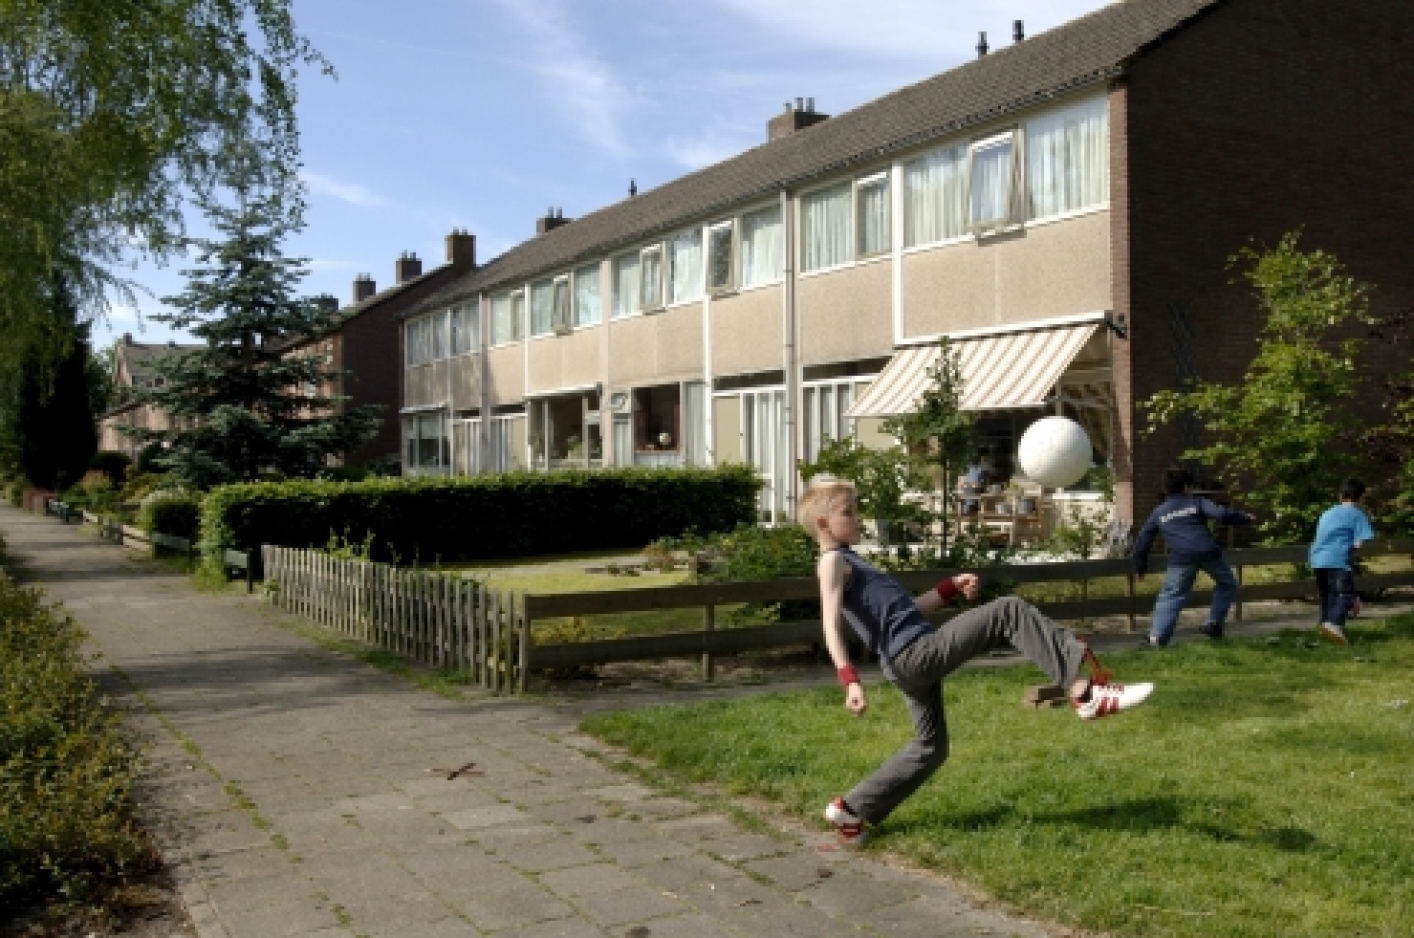 foto van spelend kind met bal op veldje in een woonwijk